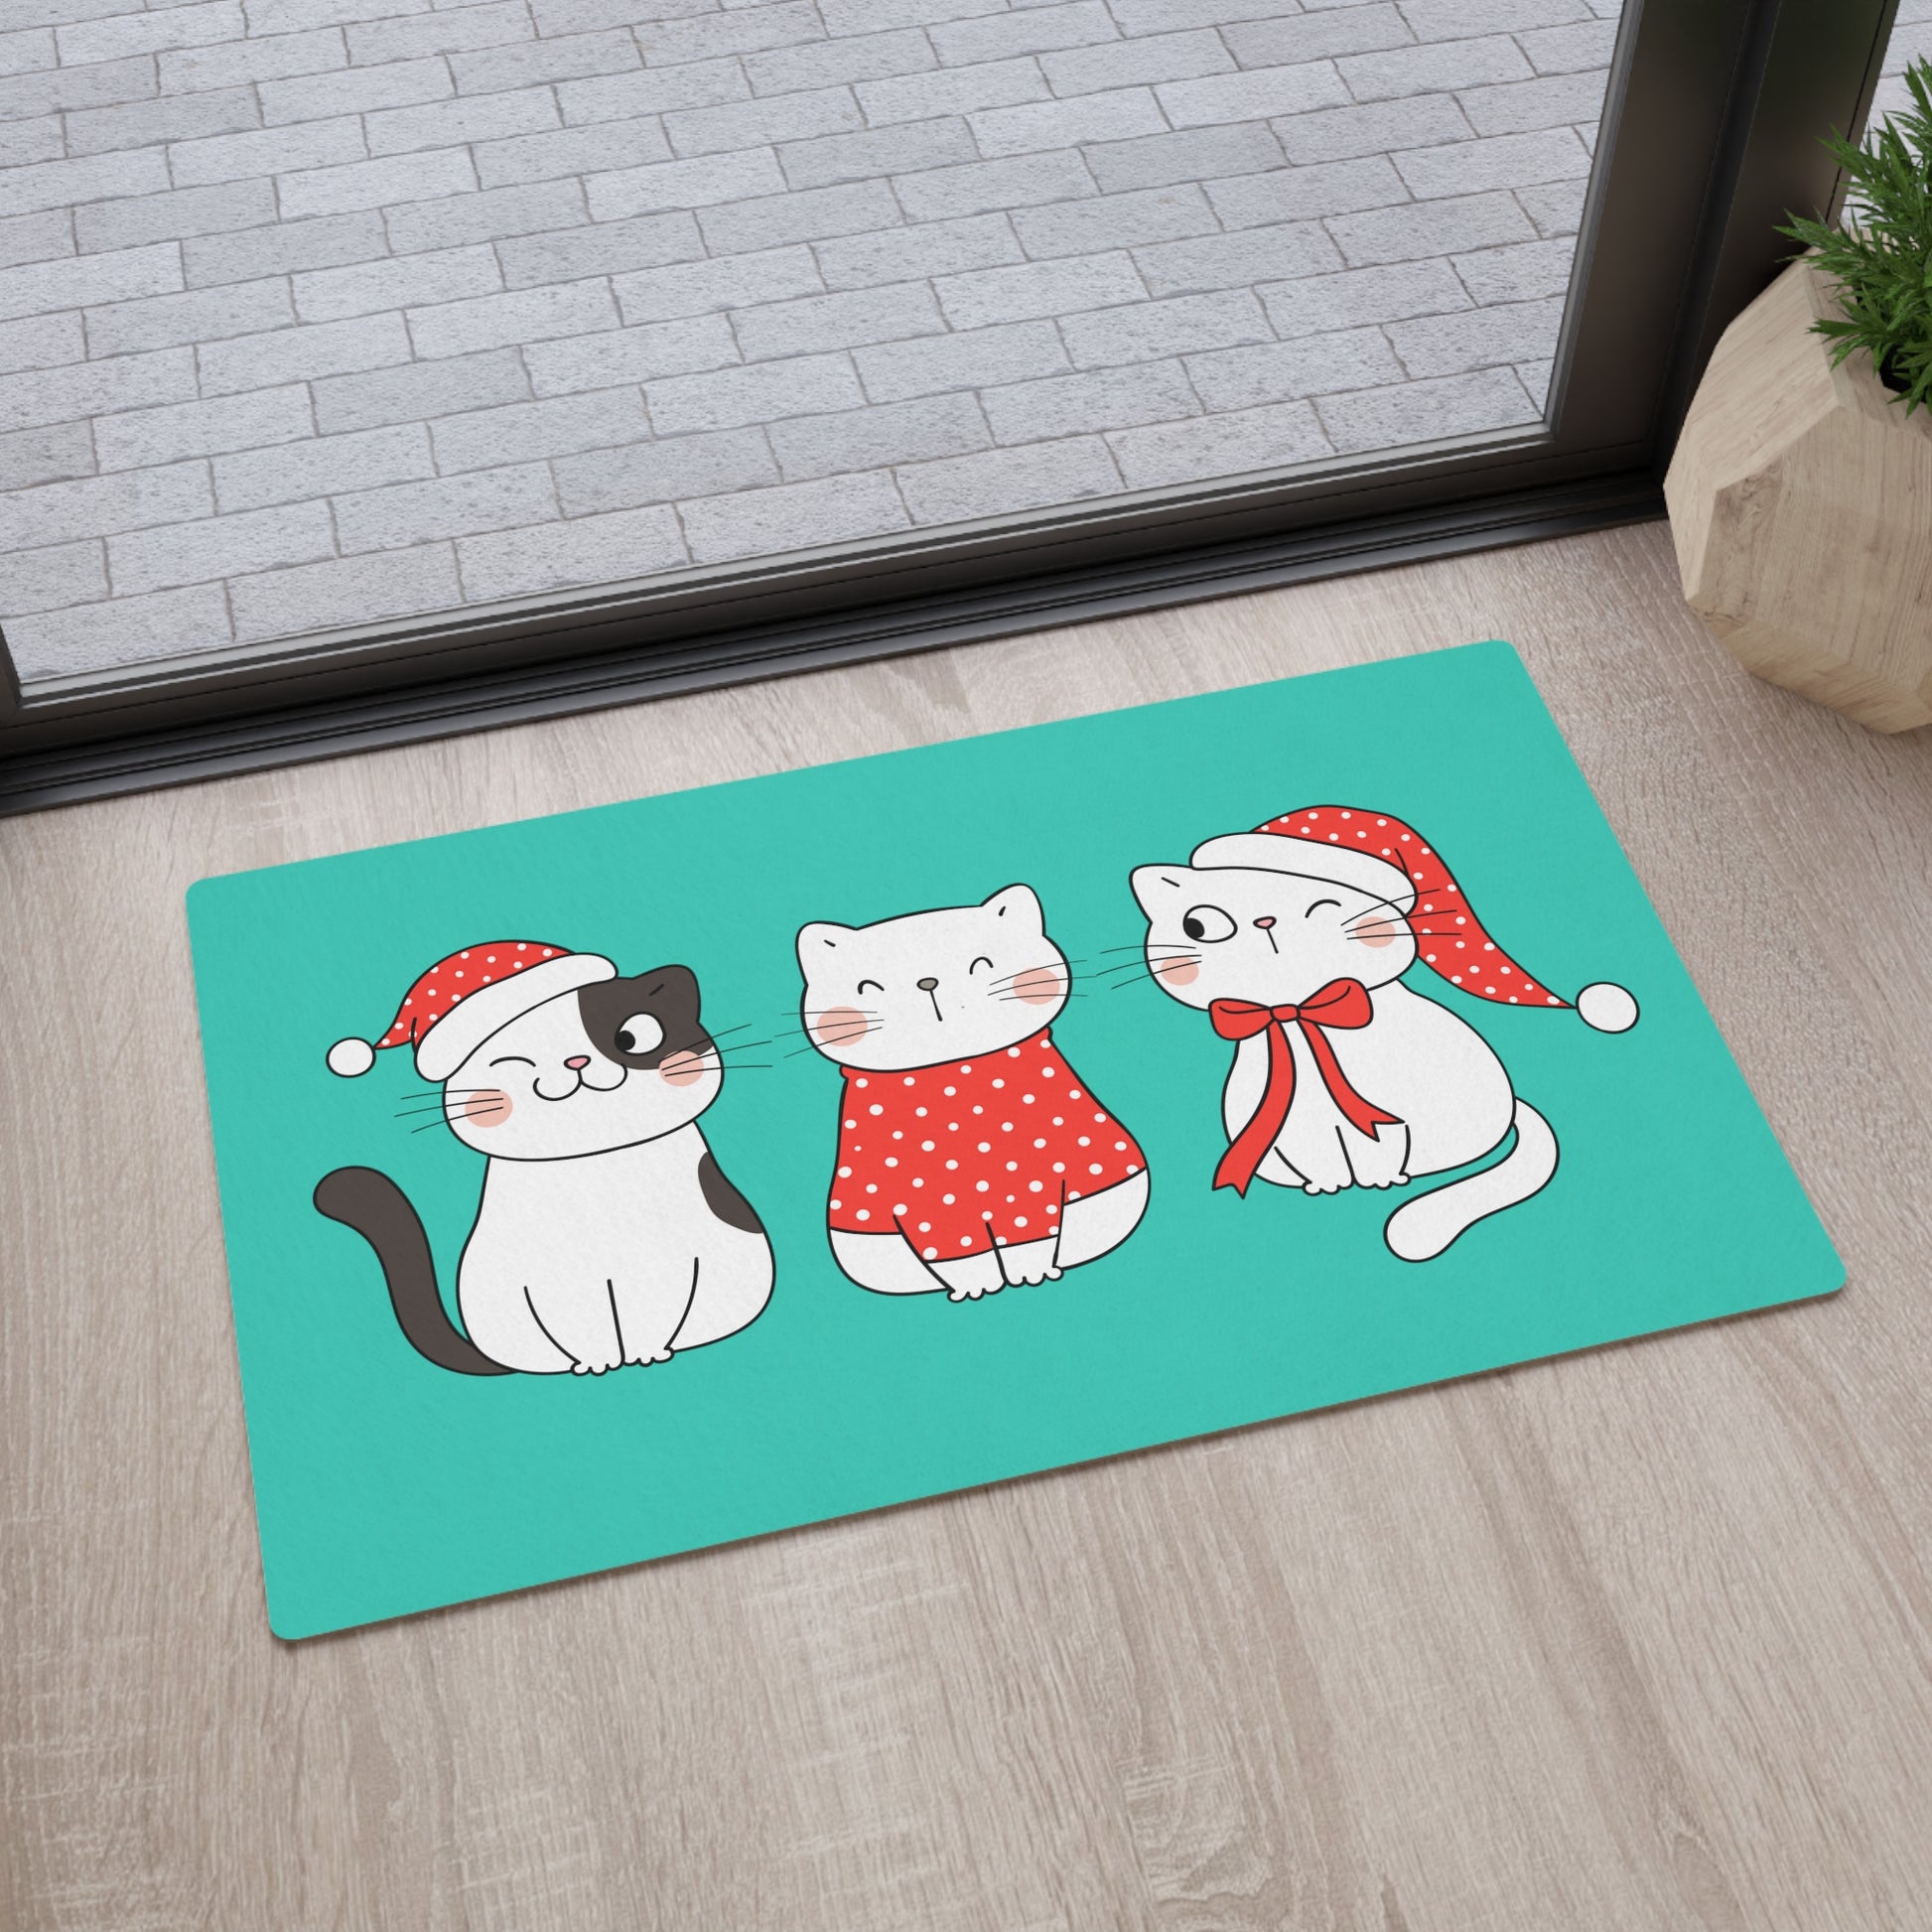 Cute cats Christmas Floor mat, Kawaii cats Merry xmas flooring mat, Cozy cats Christmas doormat, Christmas home decor, Christmas decorations